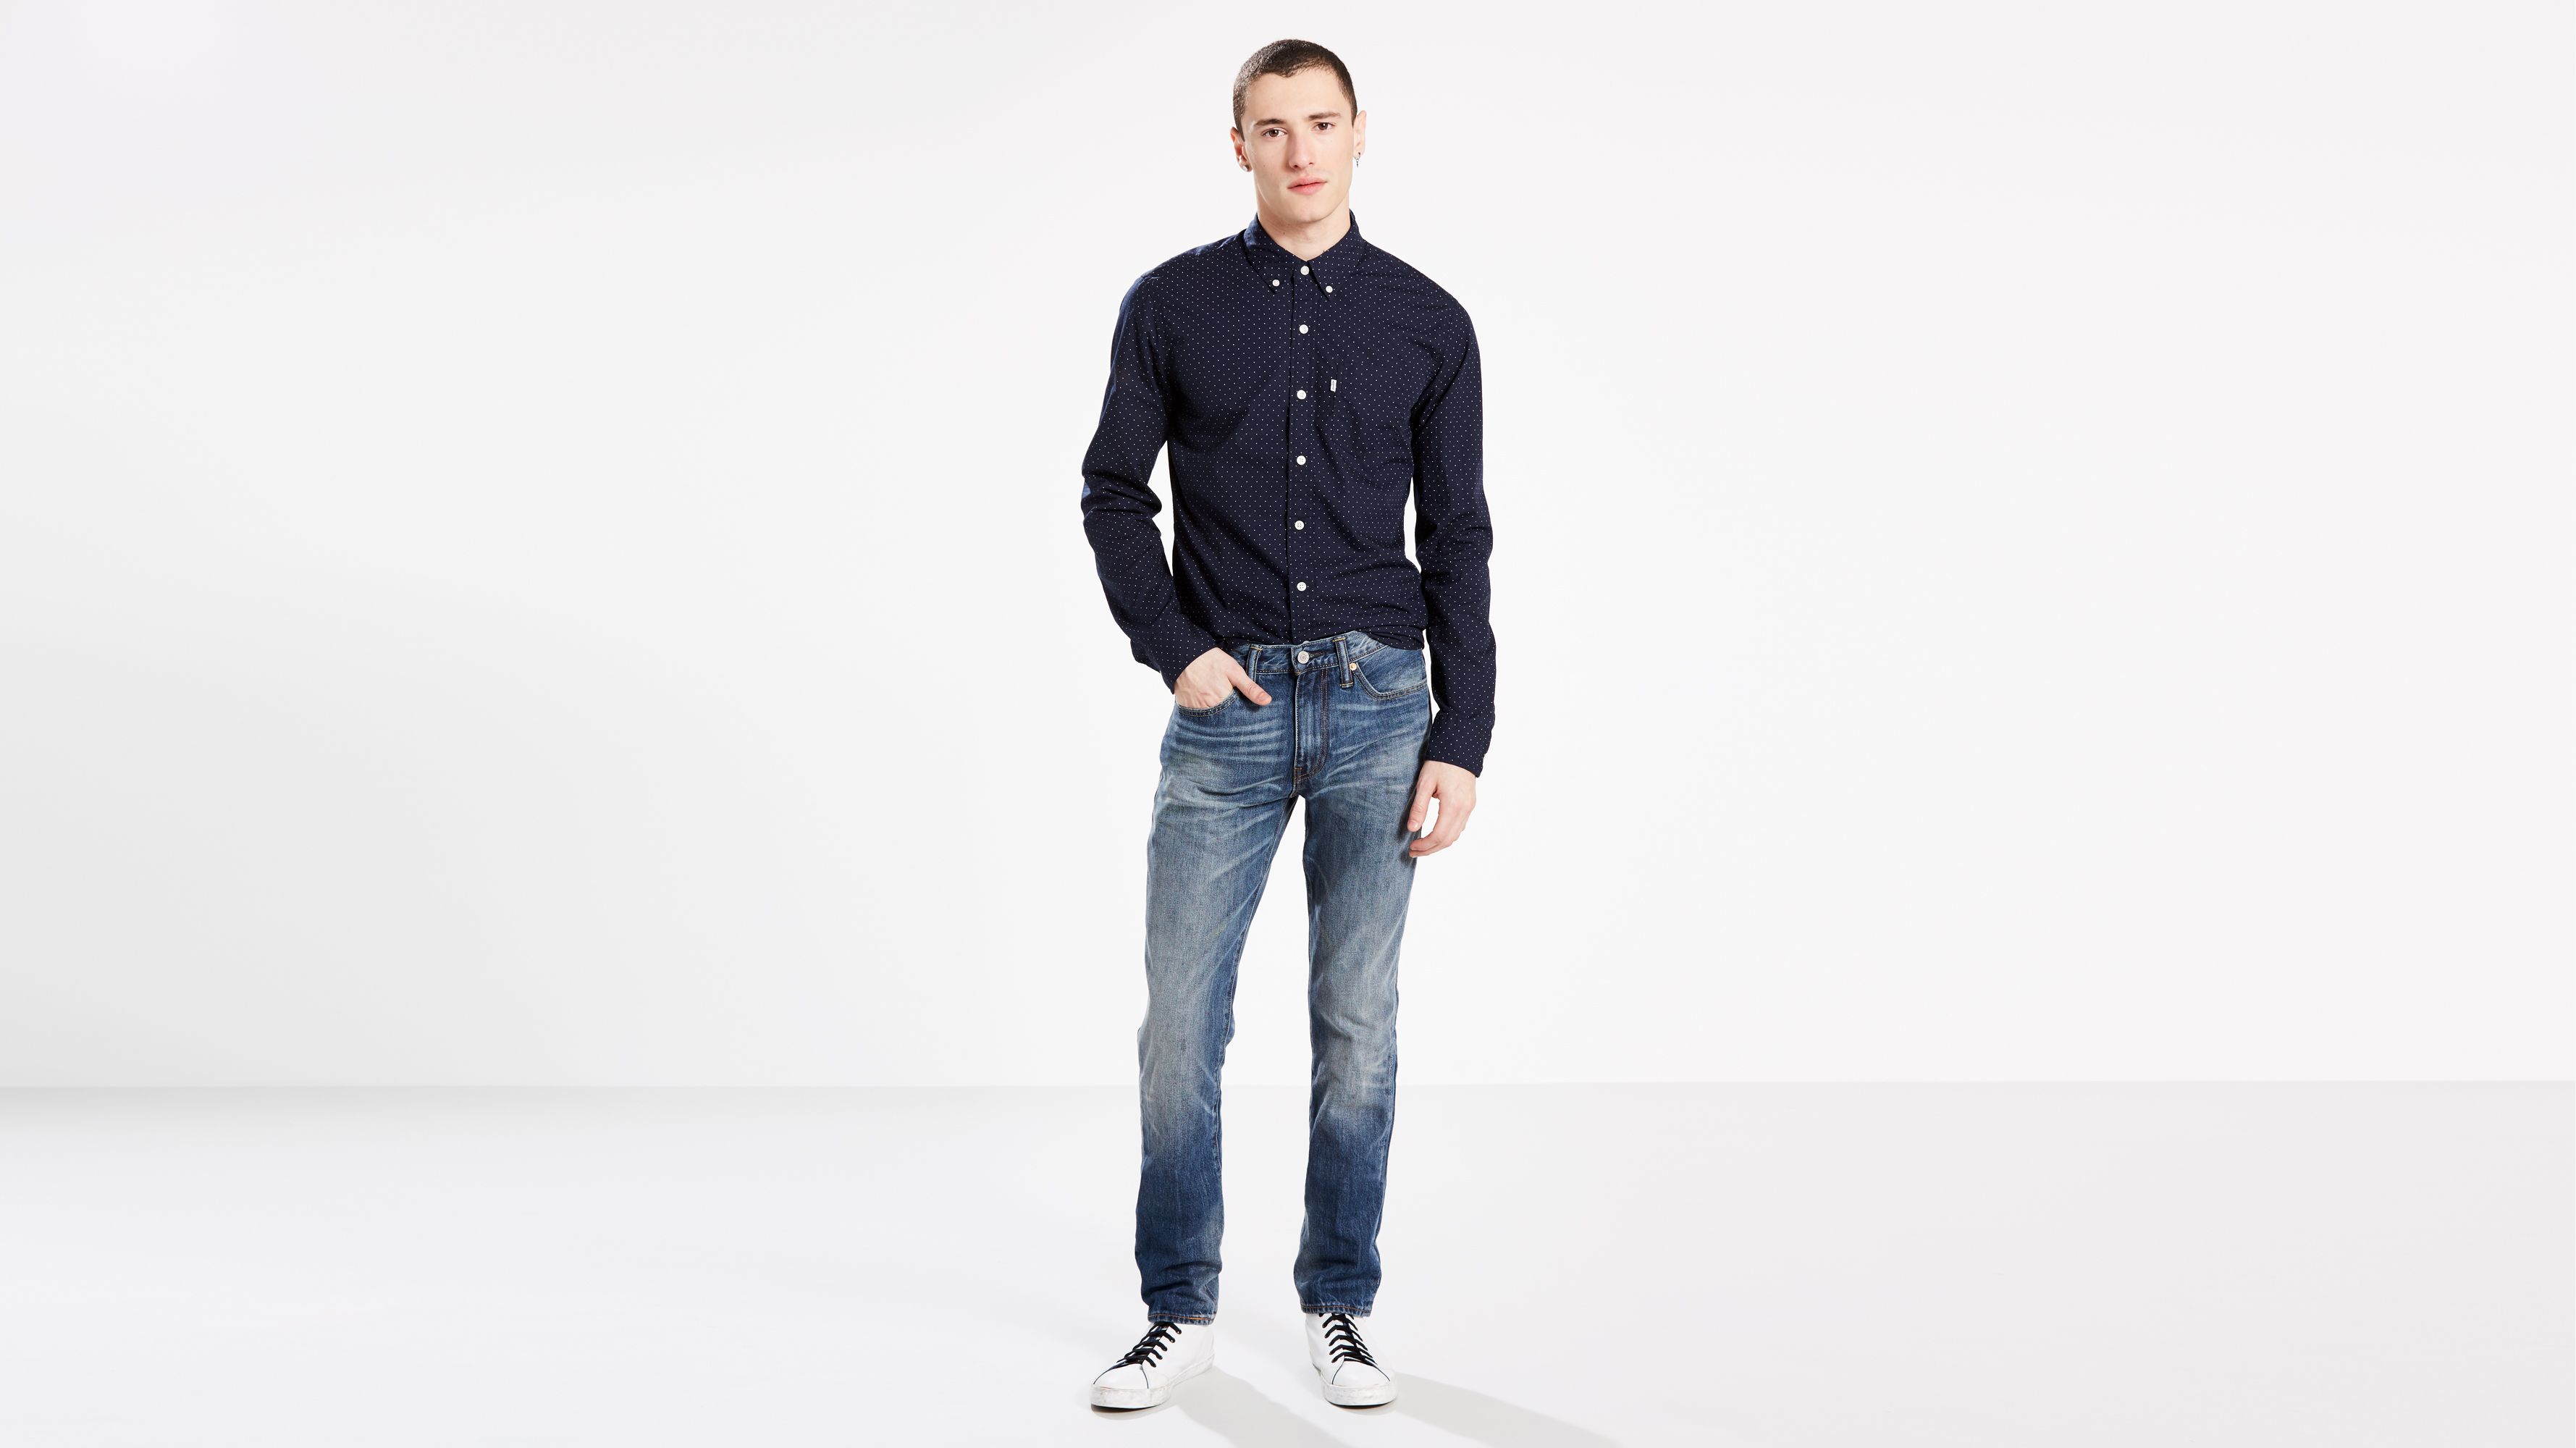 Men's Jeans - Shop Jeans For Men | Levi's® Us